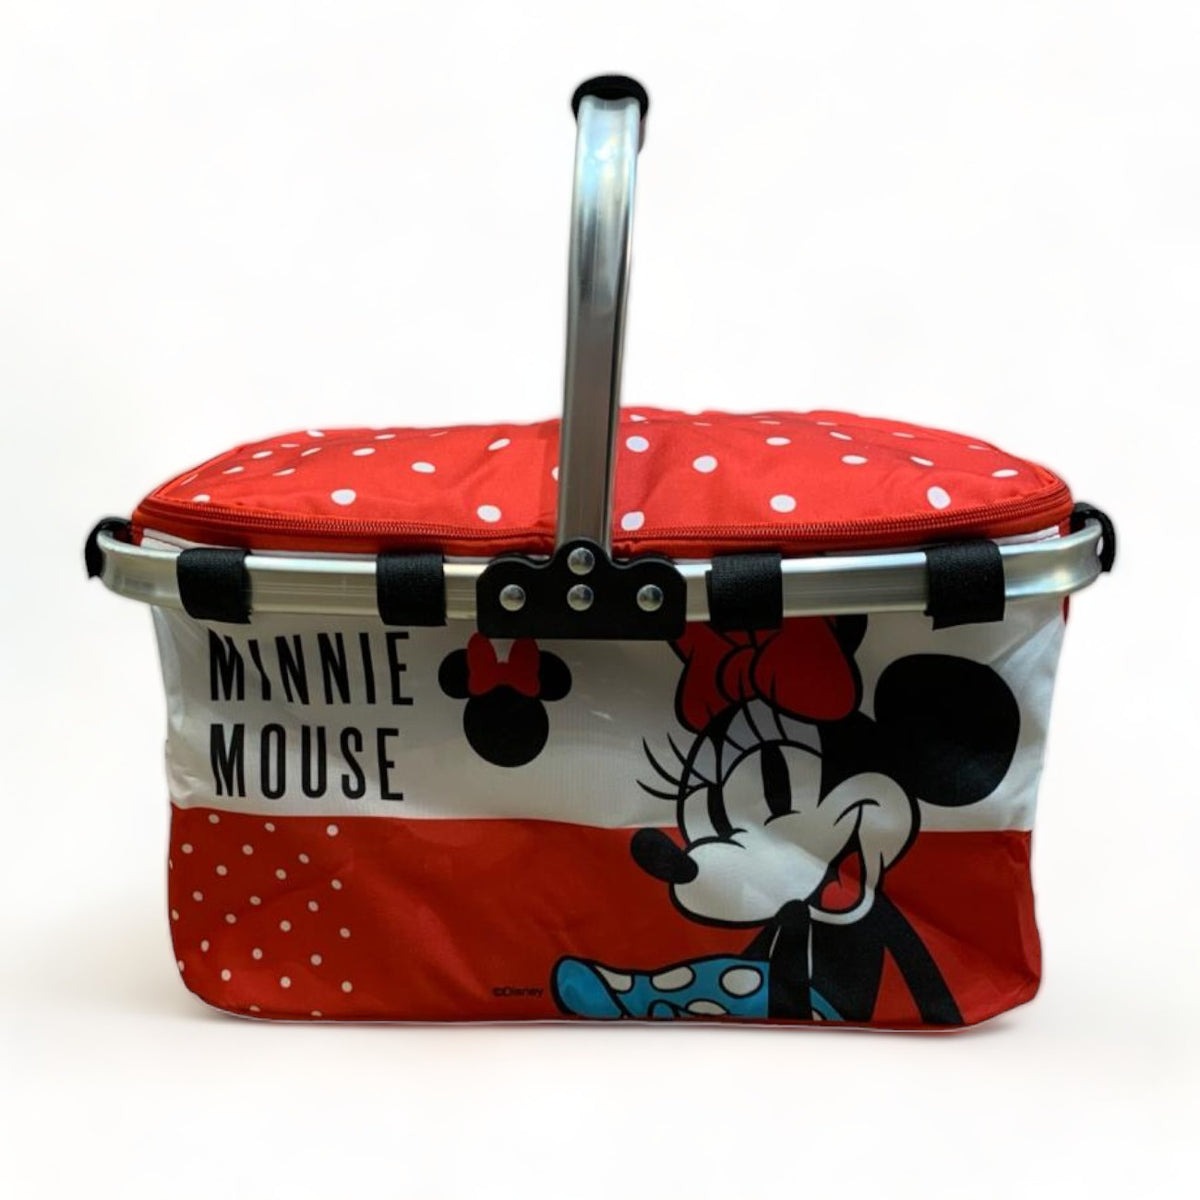 Canasta térmica plegable de Minnie Mouse 35x25cm